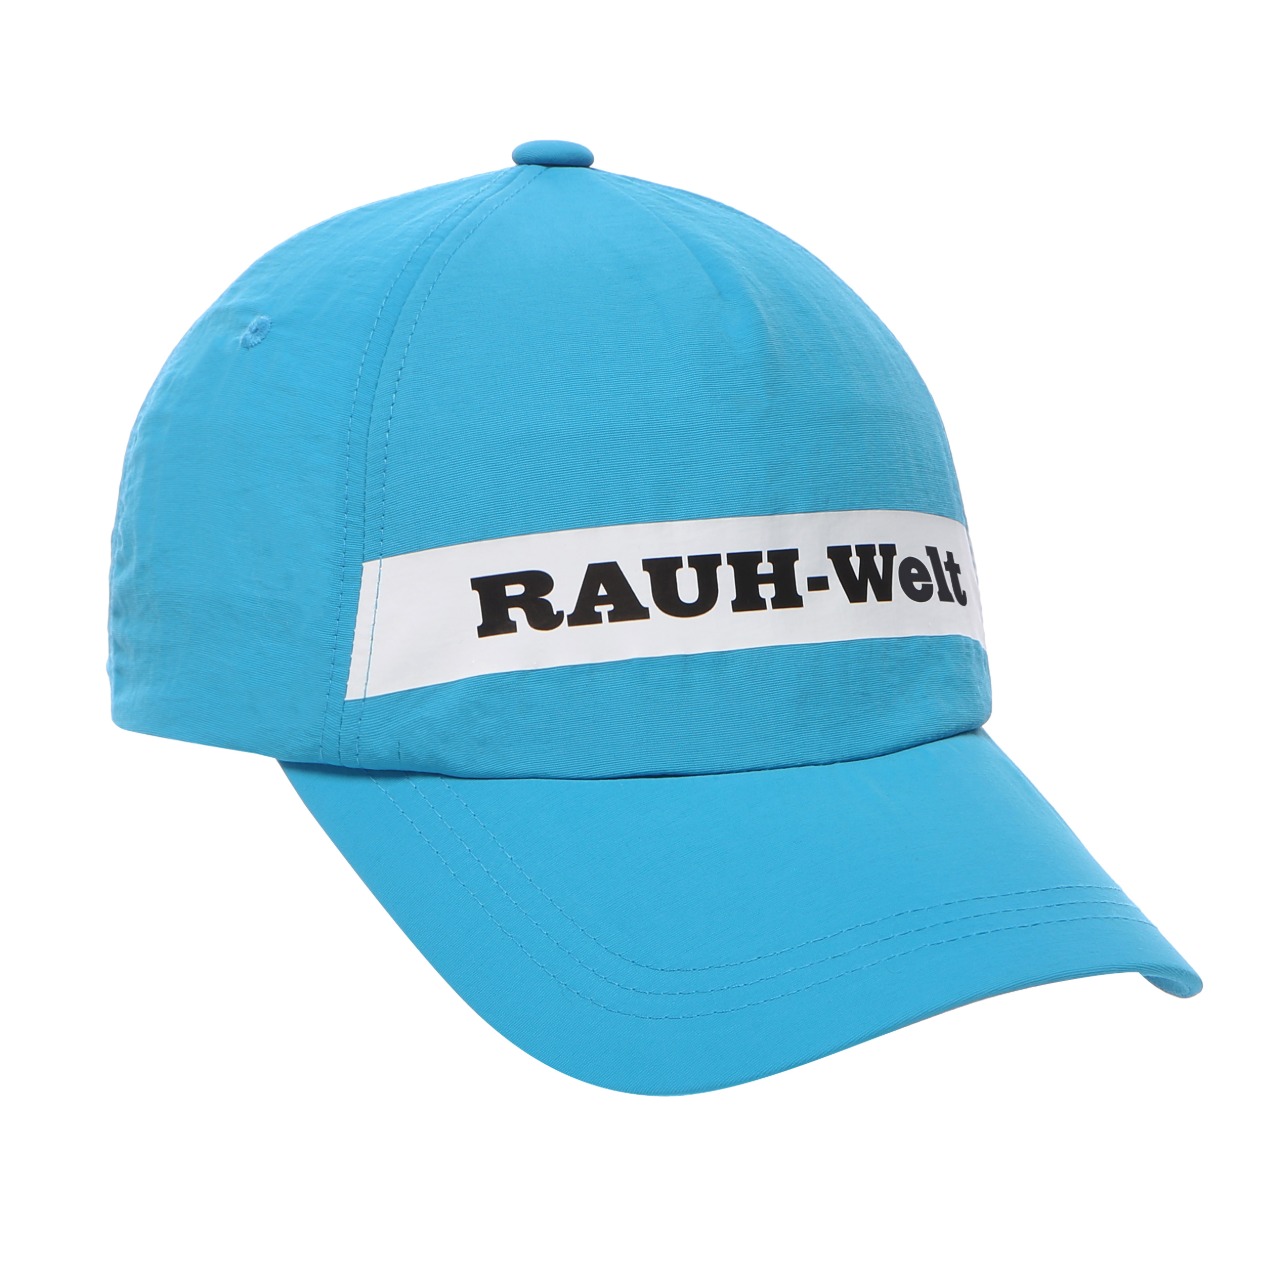 RAUH-Welt Cap Light Blue